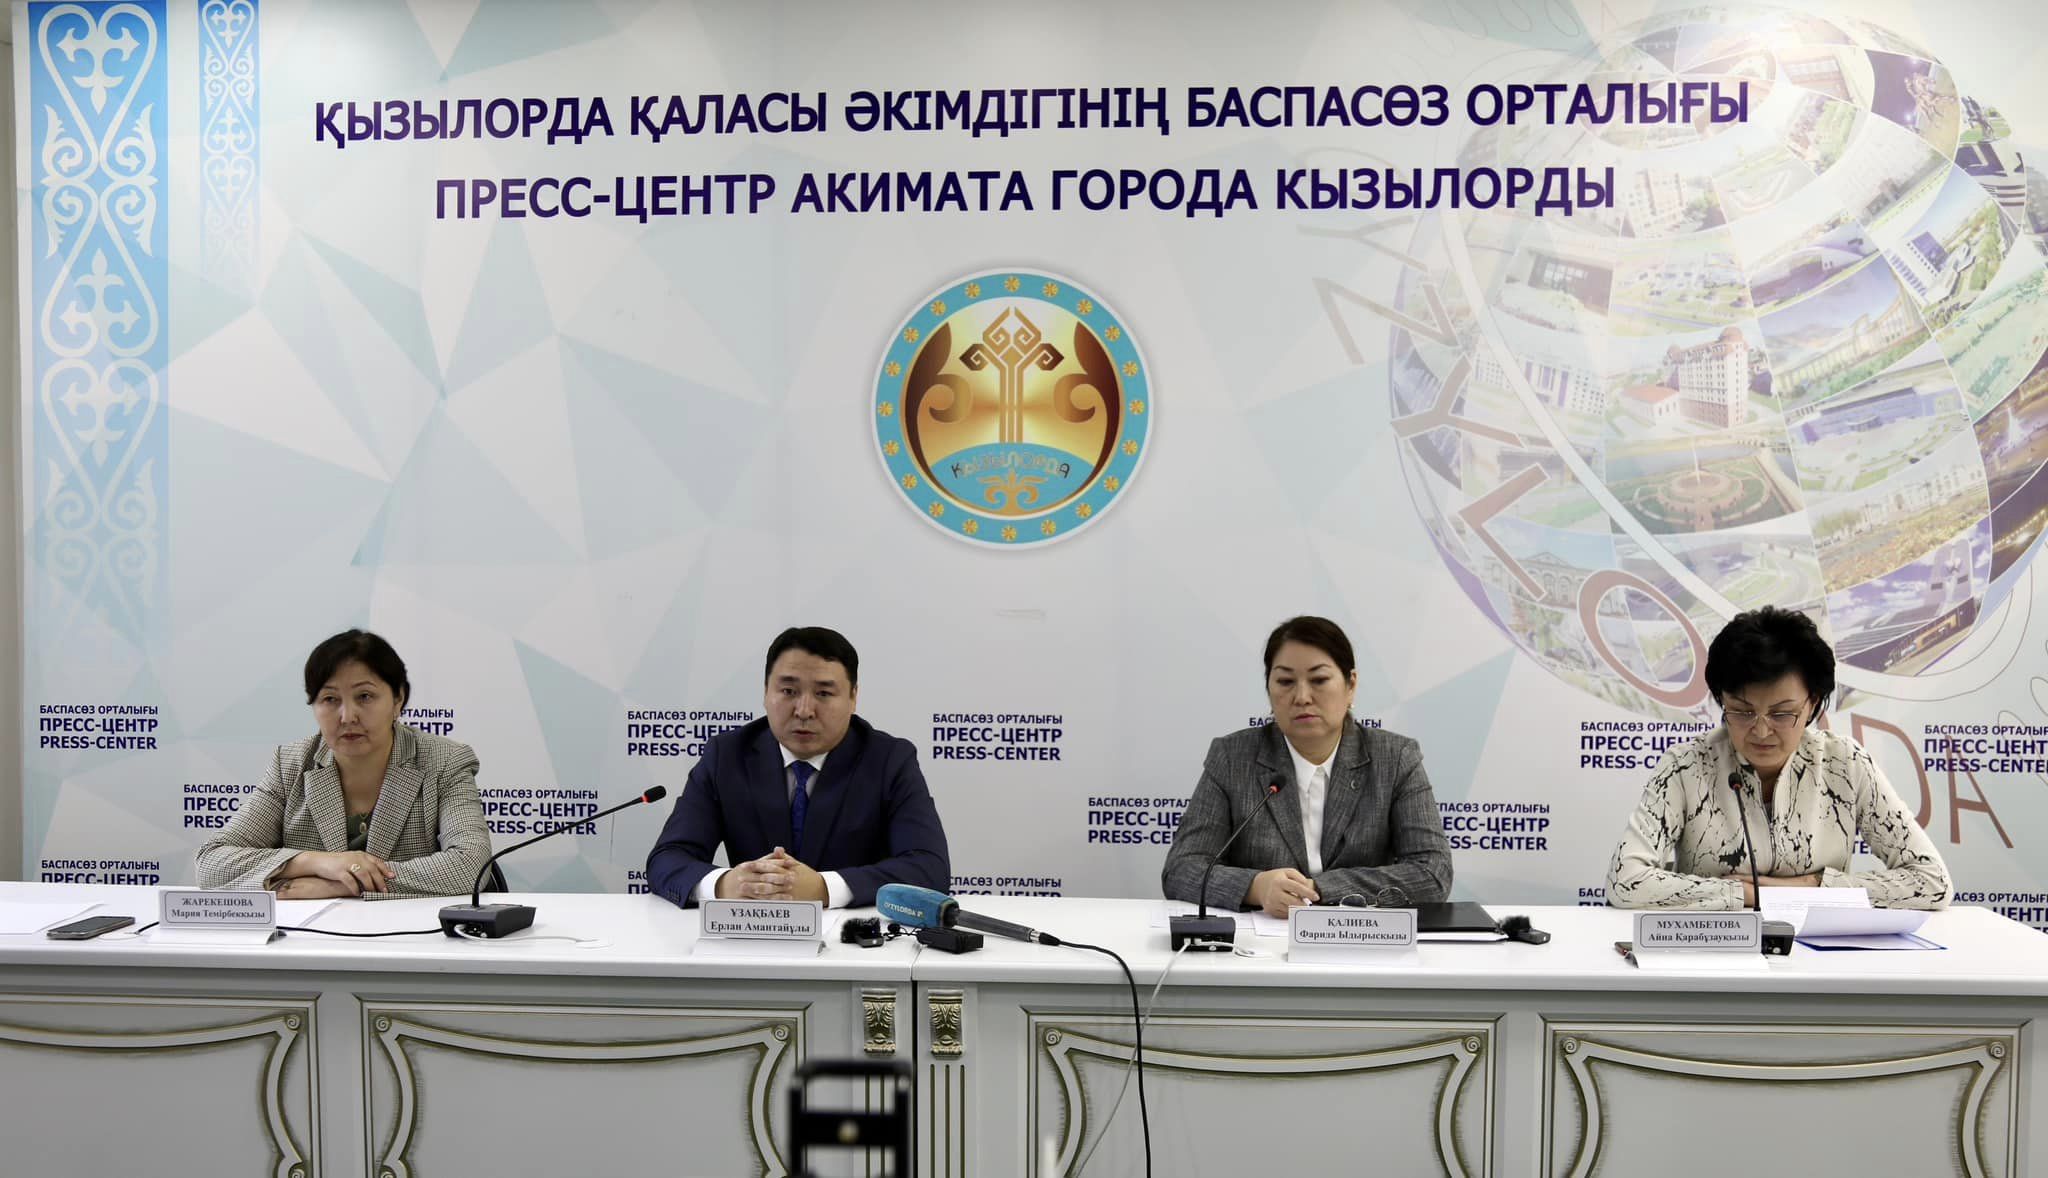 Свыше 8 тысяч исследований на вирусные инфекции провели в Кызылорде